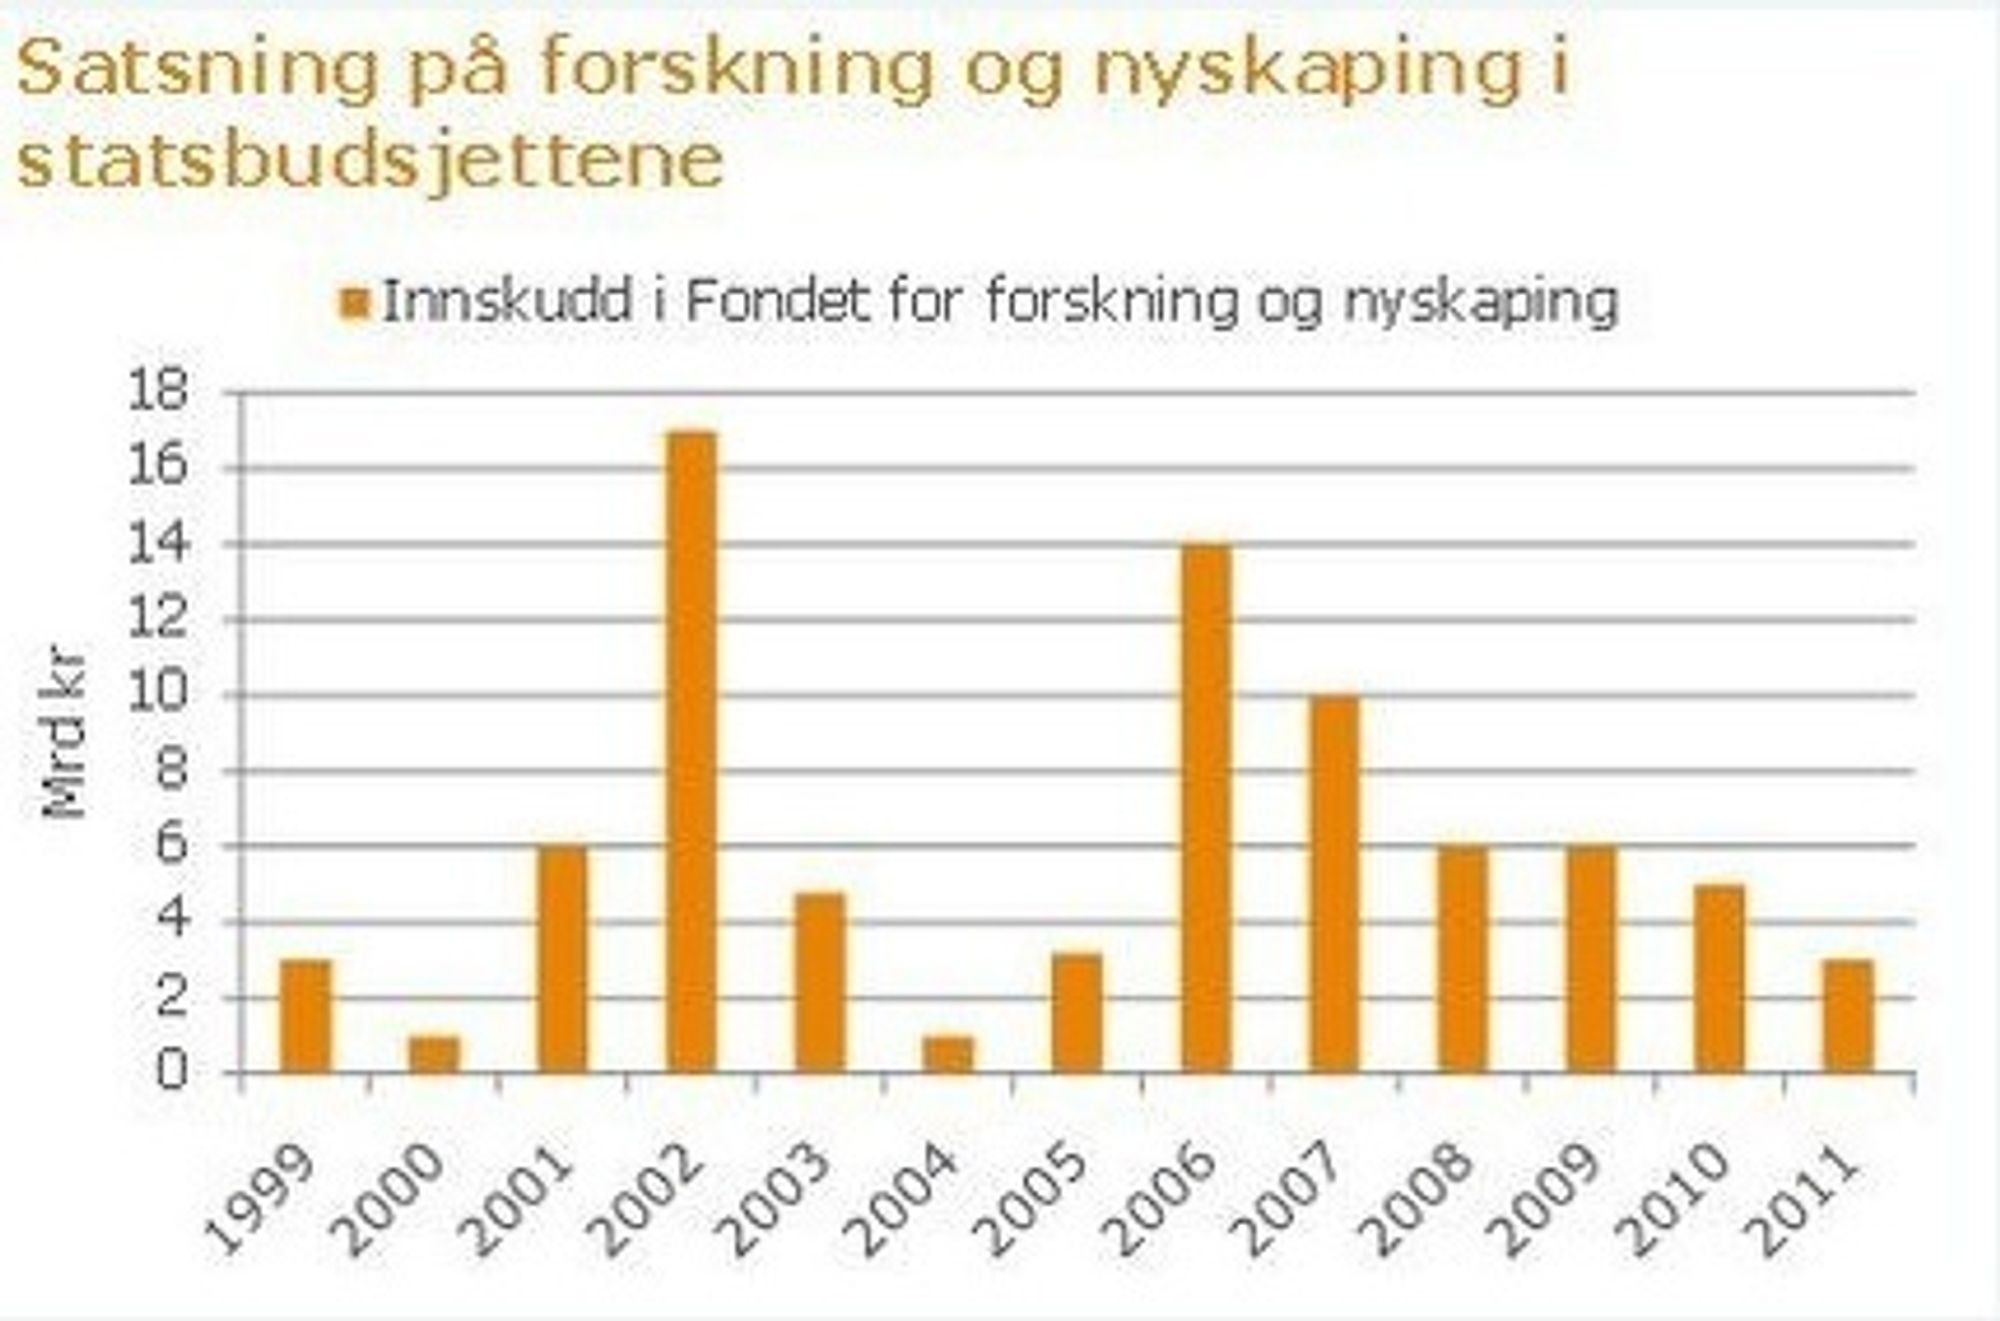 Regjeringens innskudd i fondet for forskning og nyskaping 1999-2011. Tall fra Norsk Industri.